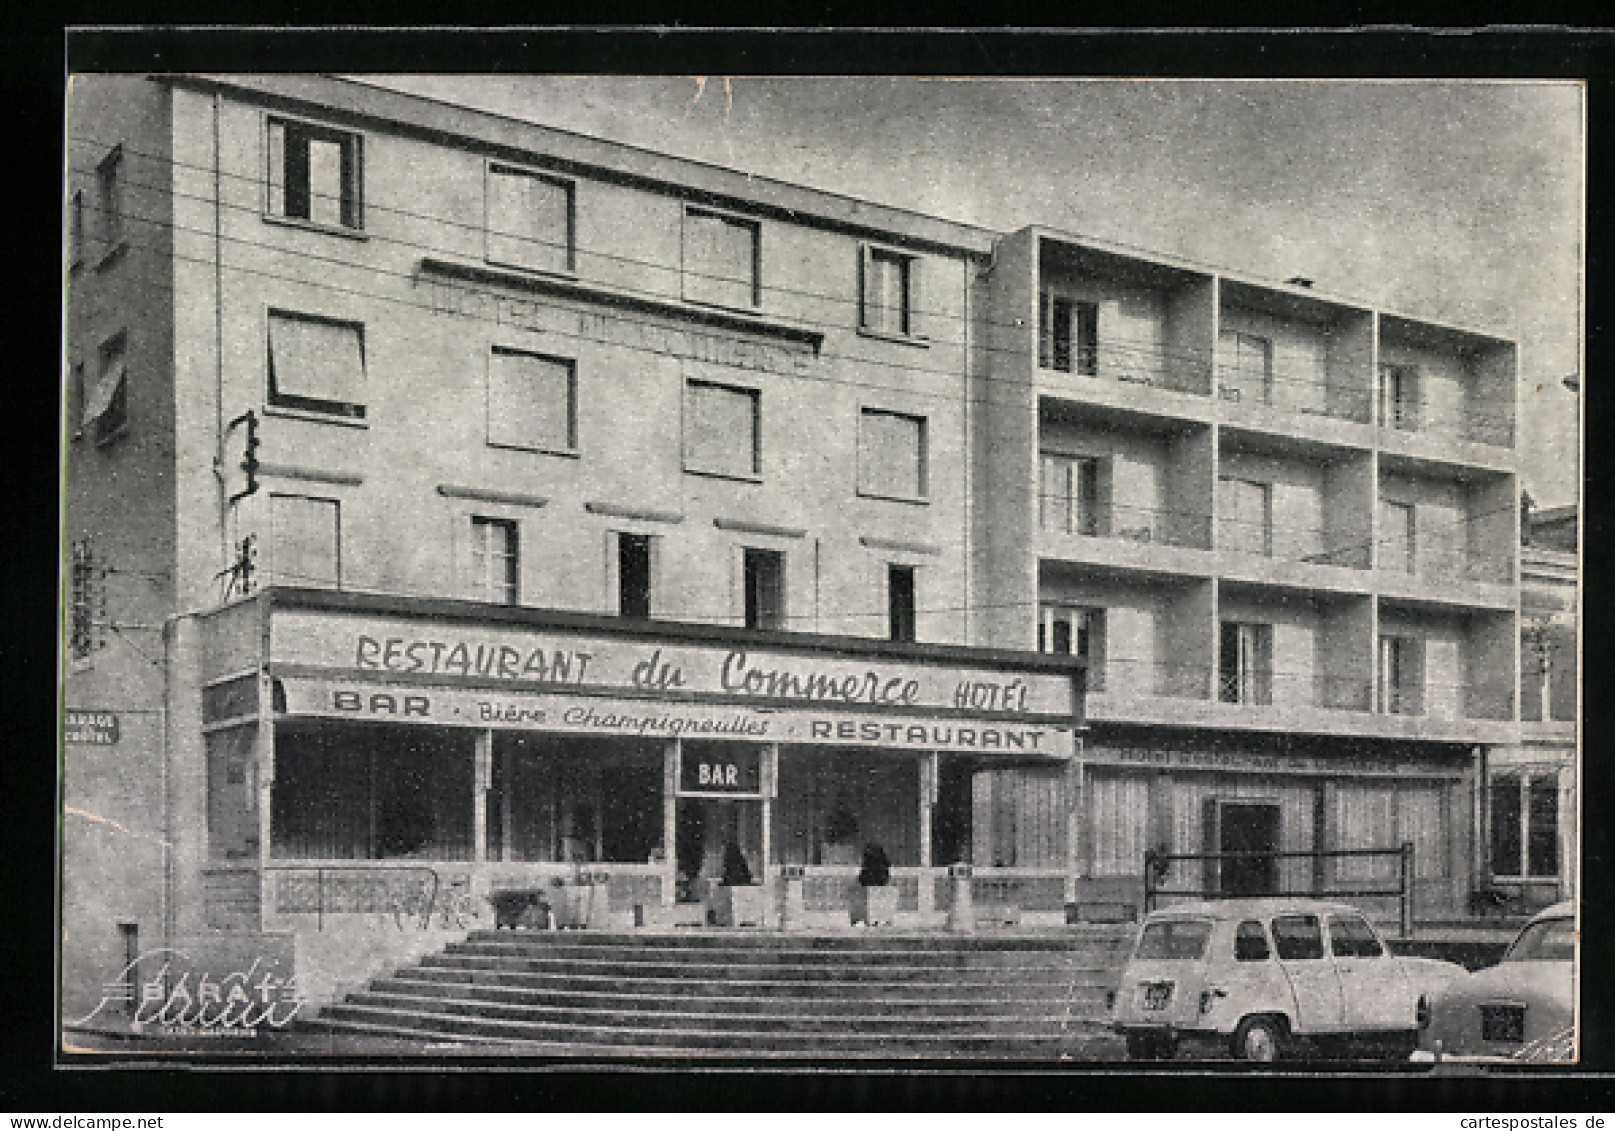 CPA Saint-Gaudens, Facade De L'Hotel, Vue De La Place Du Foirail  - Saint Gaudens